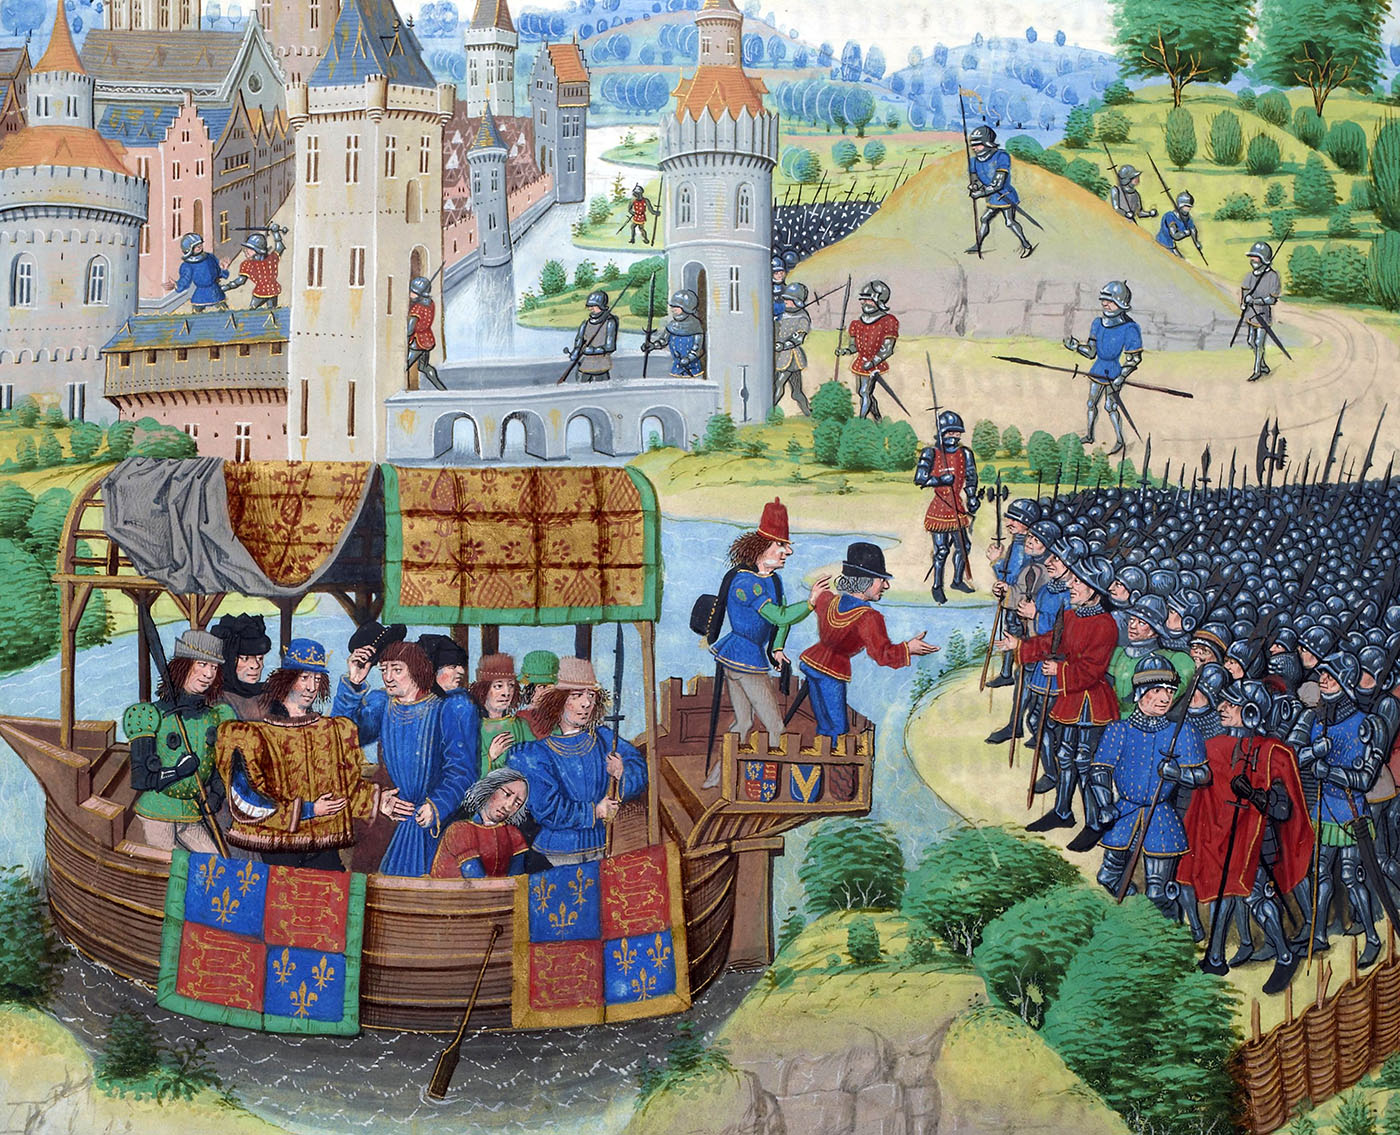 Richard II möte med rebellerna från bondeupproret 1381. Målning av Jean Froissart.